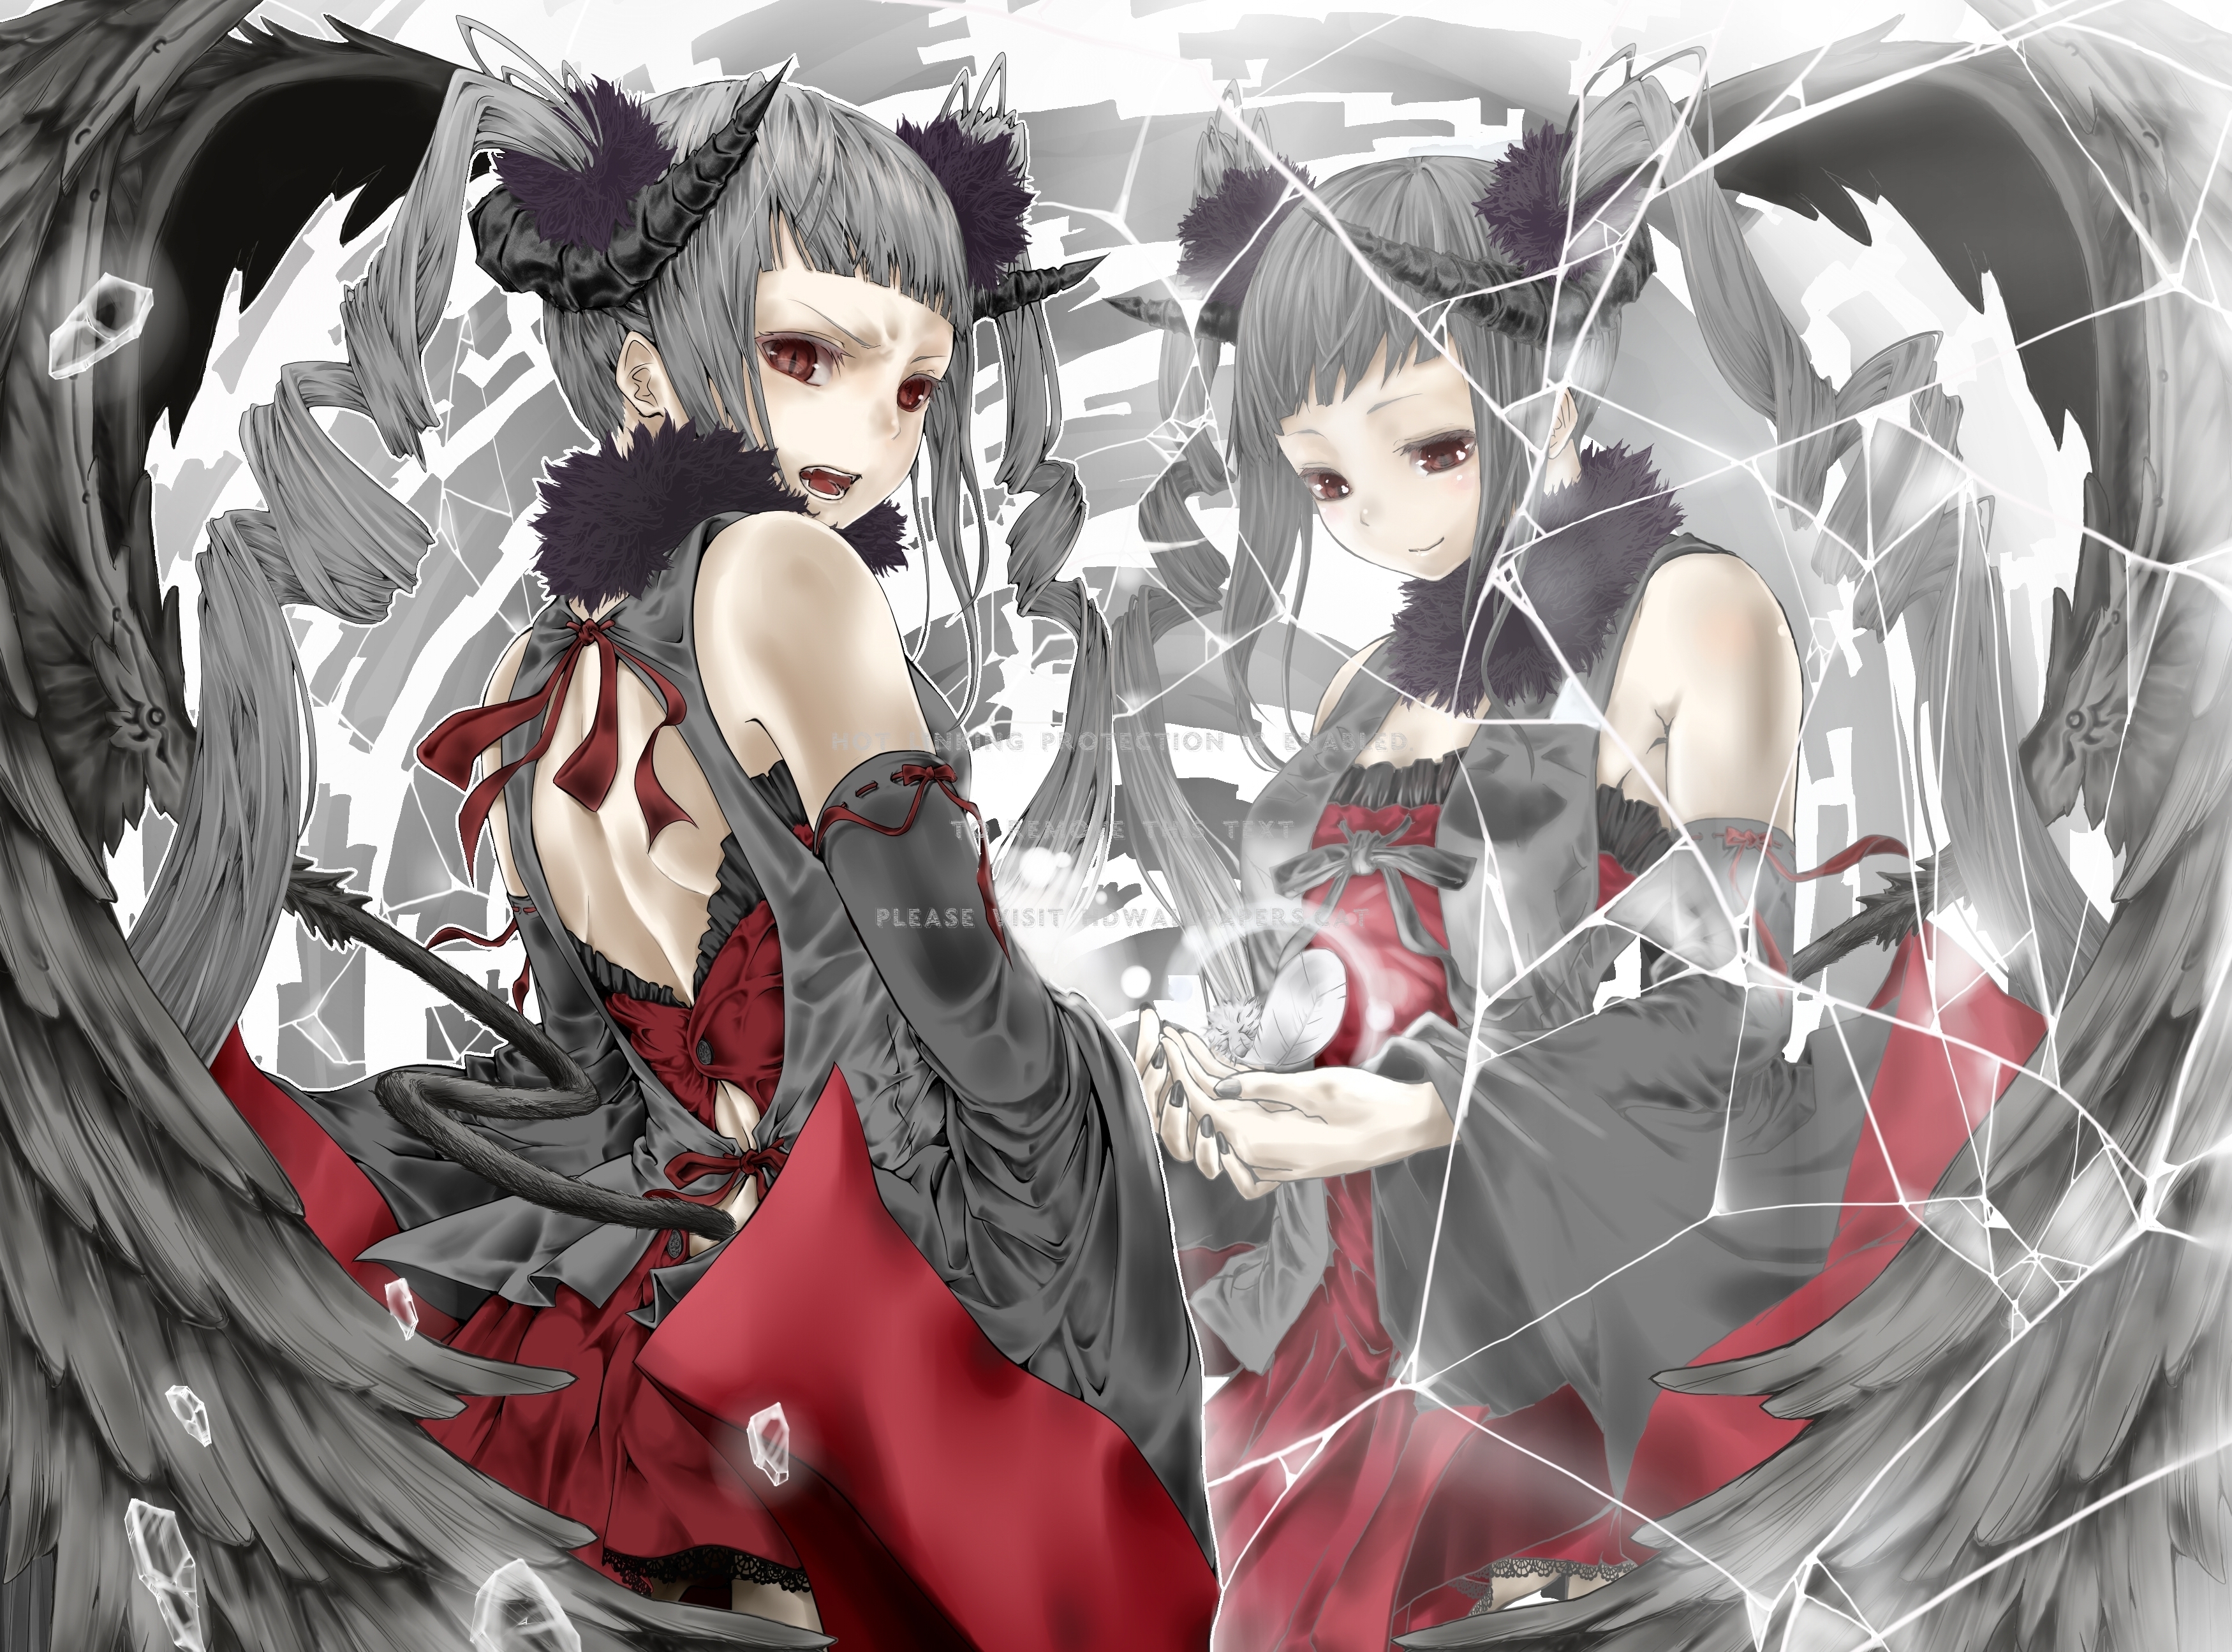 Demon Girl And Broken Mirror Anime - Anime Girl Broken Mirror - 3499x2590  Wallpaper 